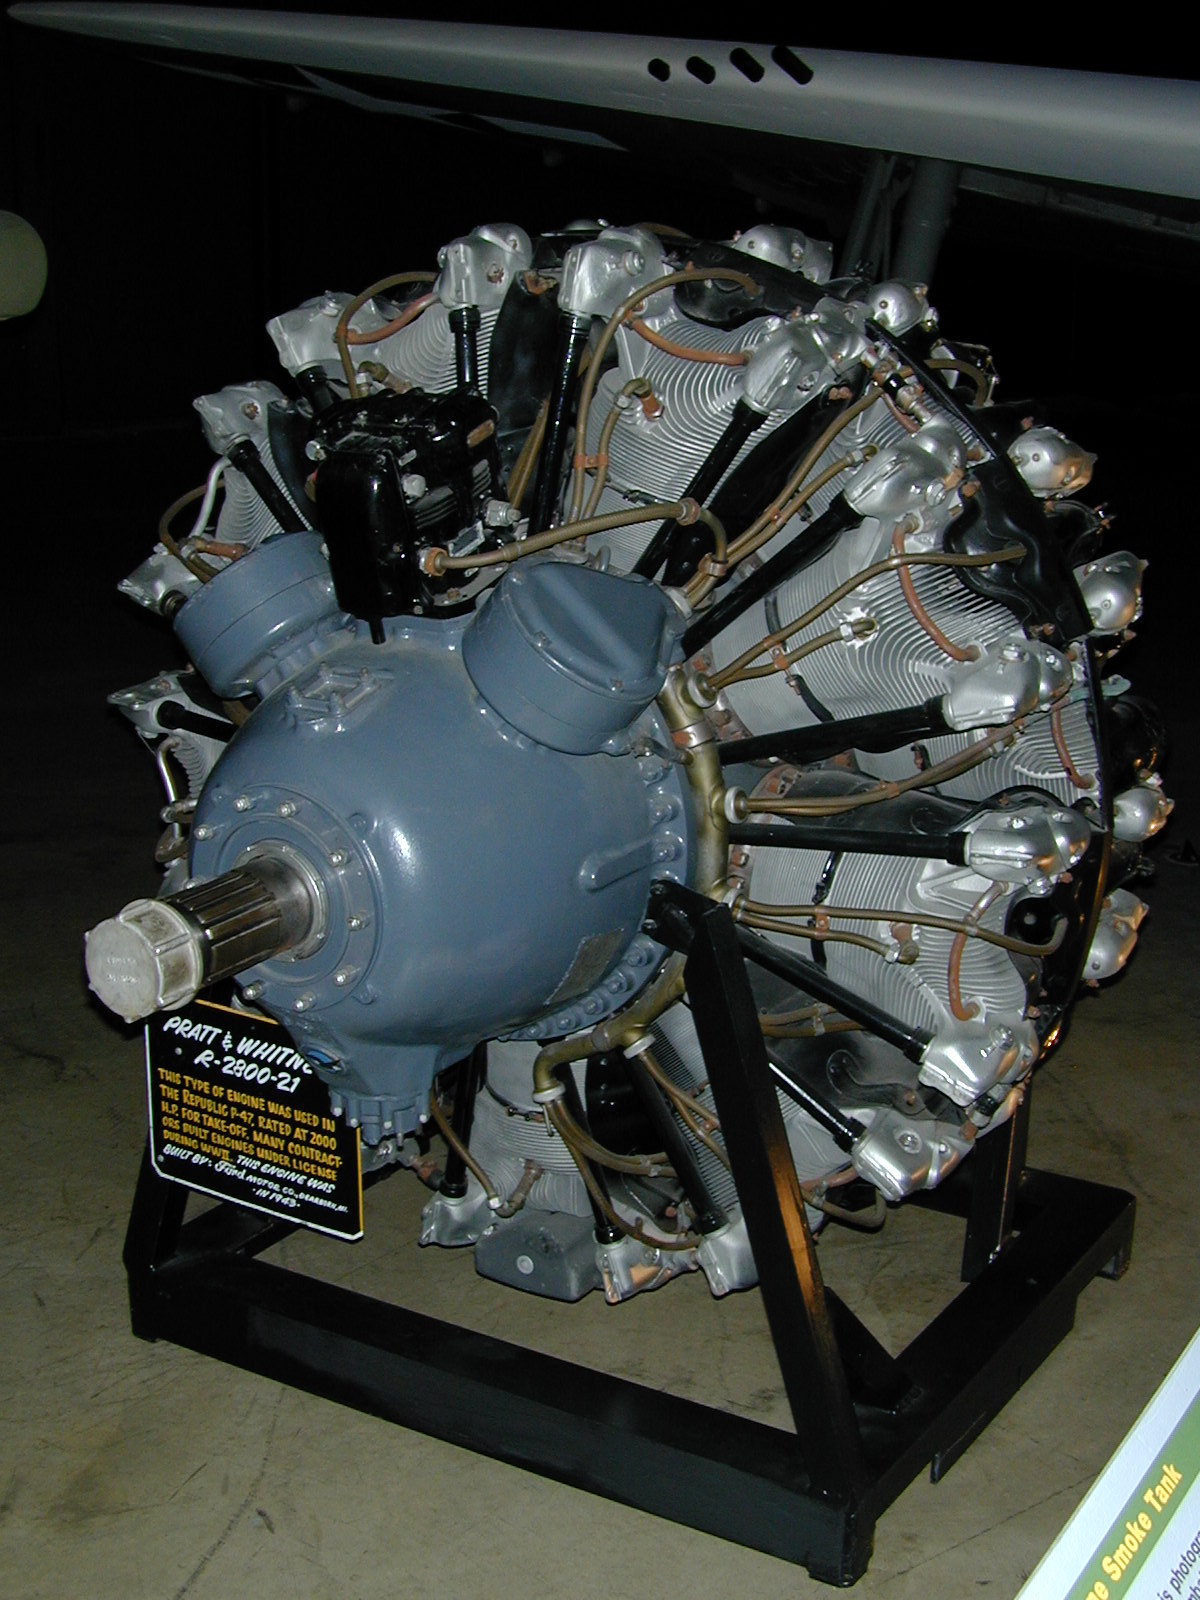 CMK 1/48 #4205 Pratt & Whitney R-2800 US Radial Engine WWII